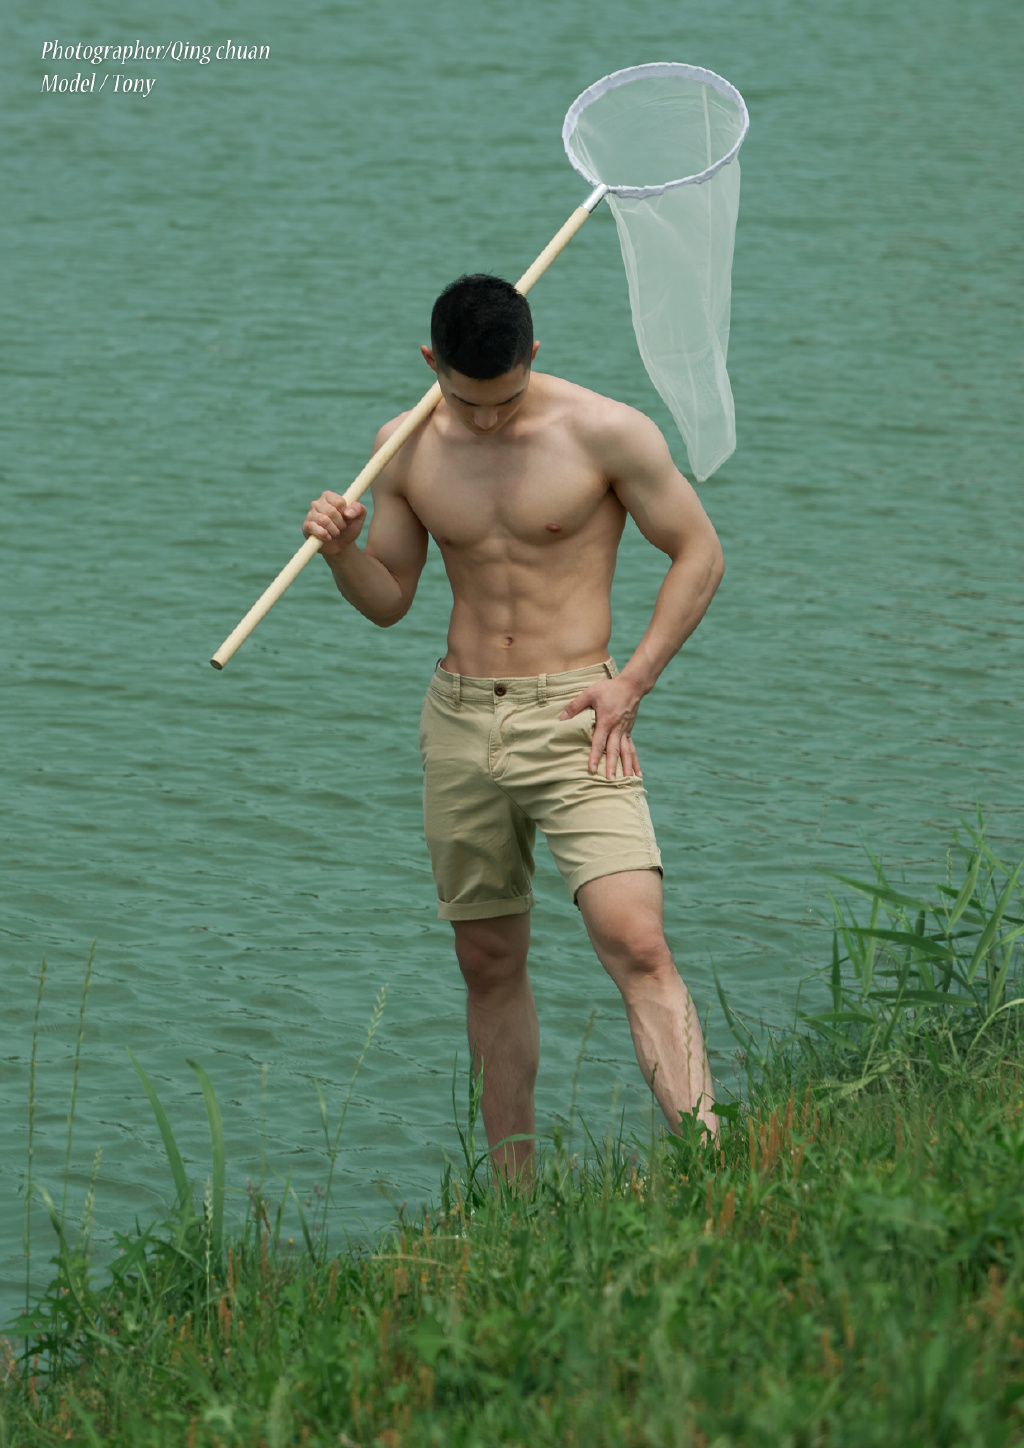 肌肉男模Kino三郎肌肉照 肌肉帅哥消防员写真 东方帅哥 小鲜肉 腹肌 消防员 健身迷网